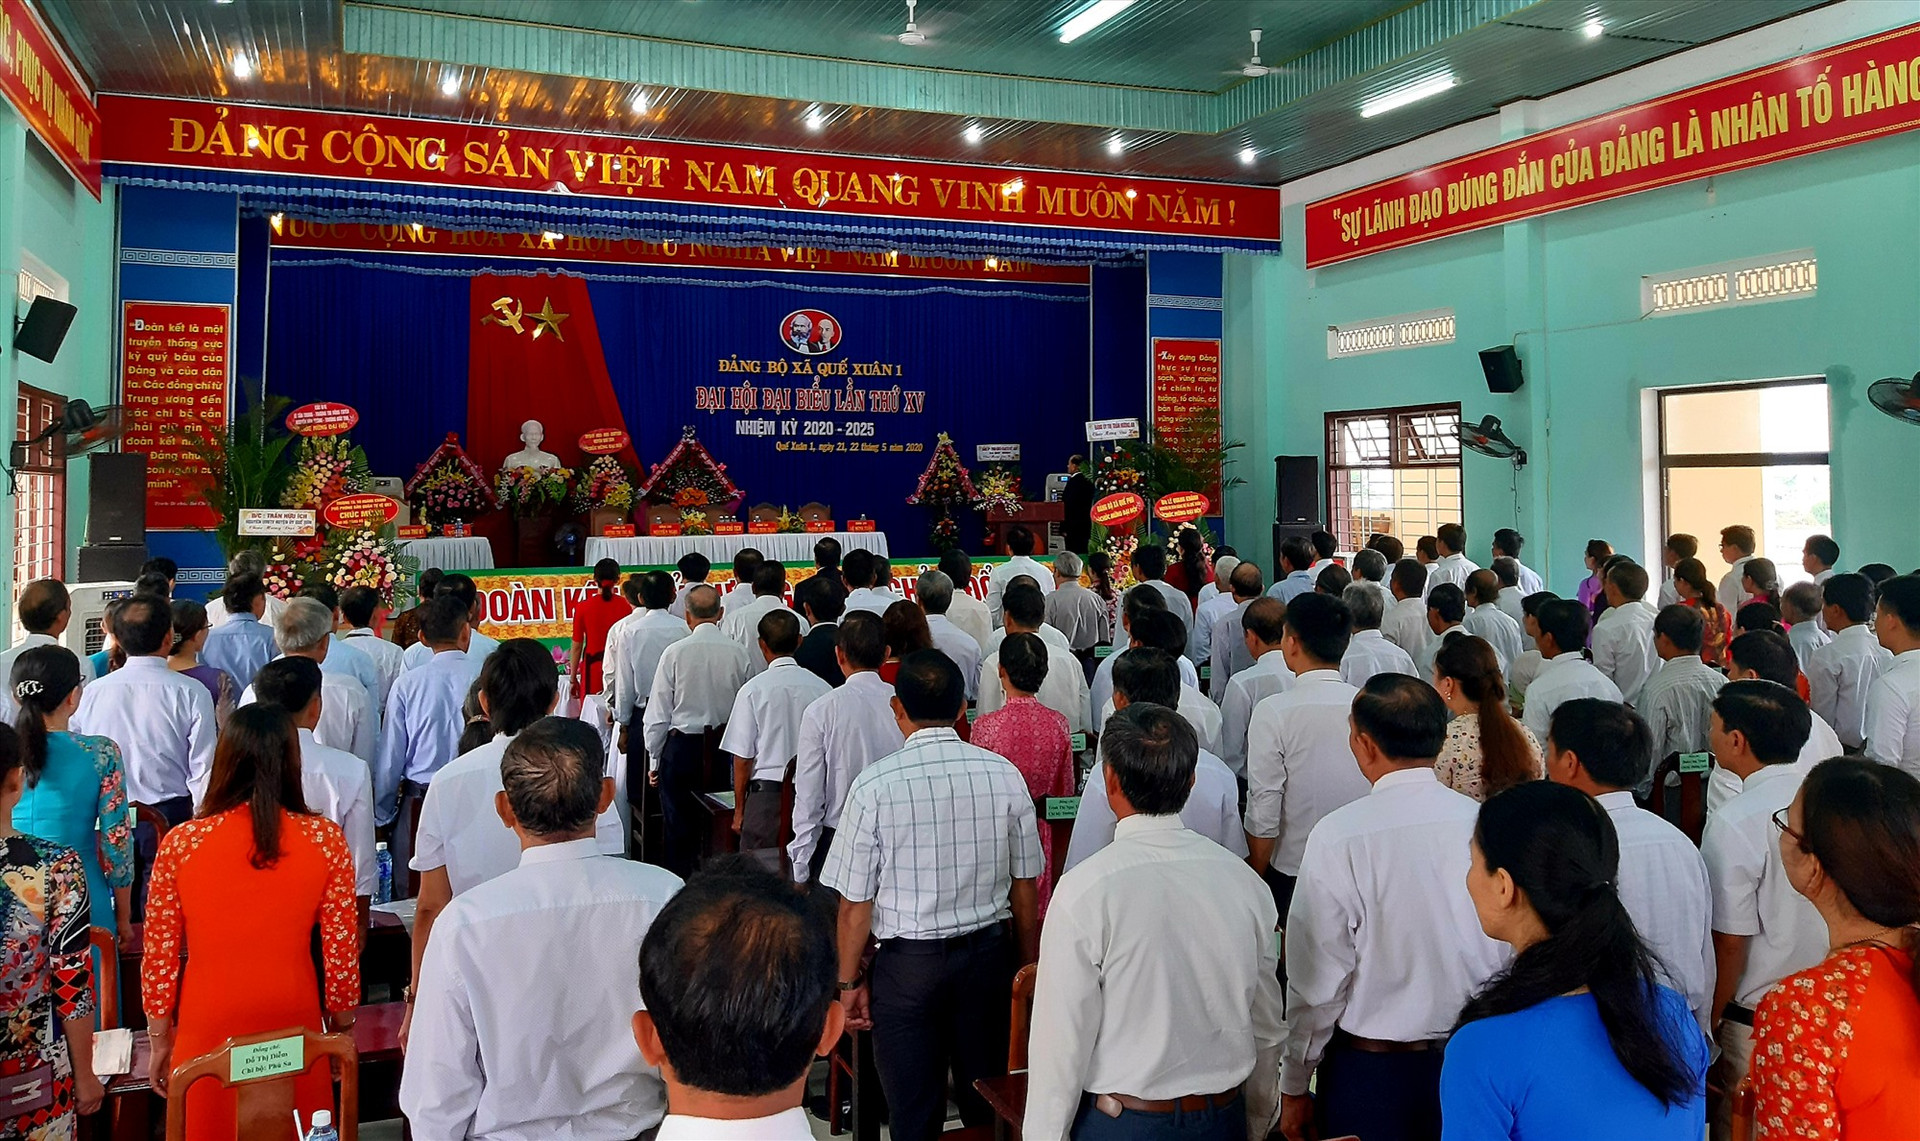 Quang cảnh phiên chính thức Đại hội Đảng bộ xã Quế Xuân 1 lần thứ XV (nhiệm kỳ 2020 – 2025) diễn ra sáng nay 22.5.  Ảnh: VĂN SỰ